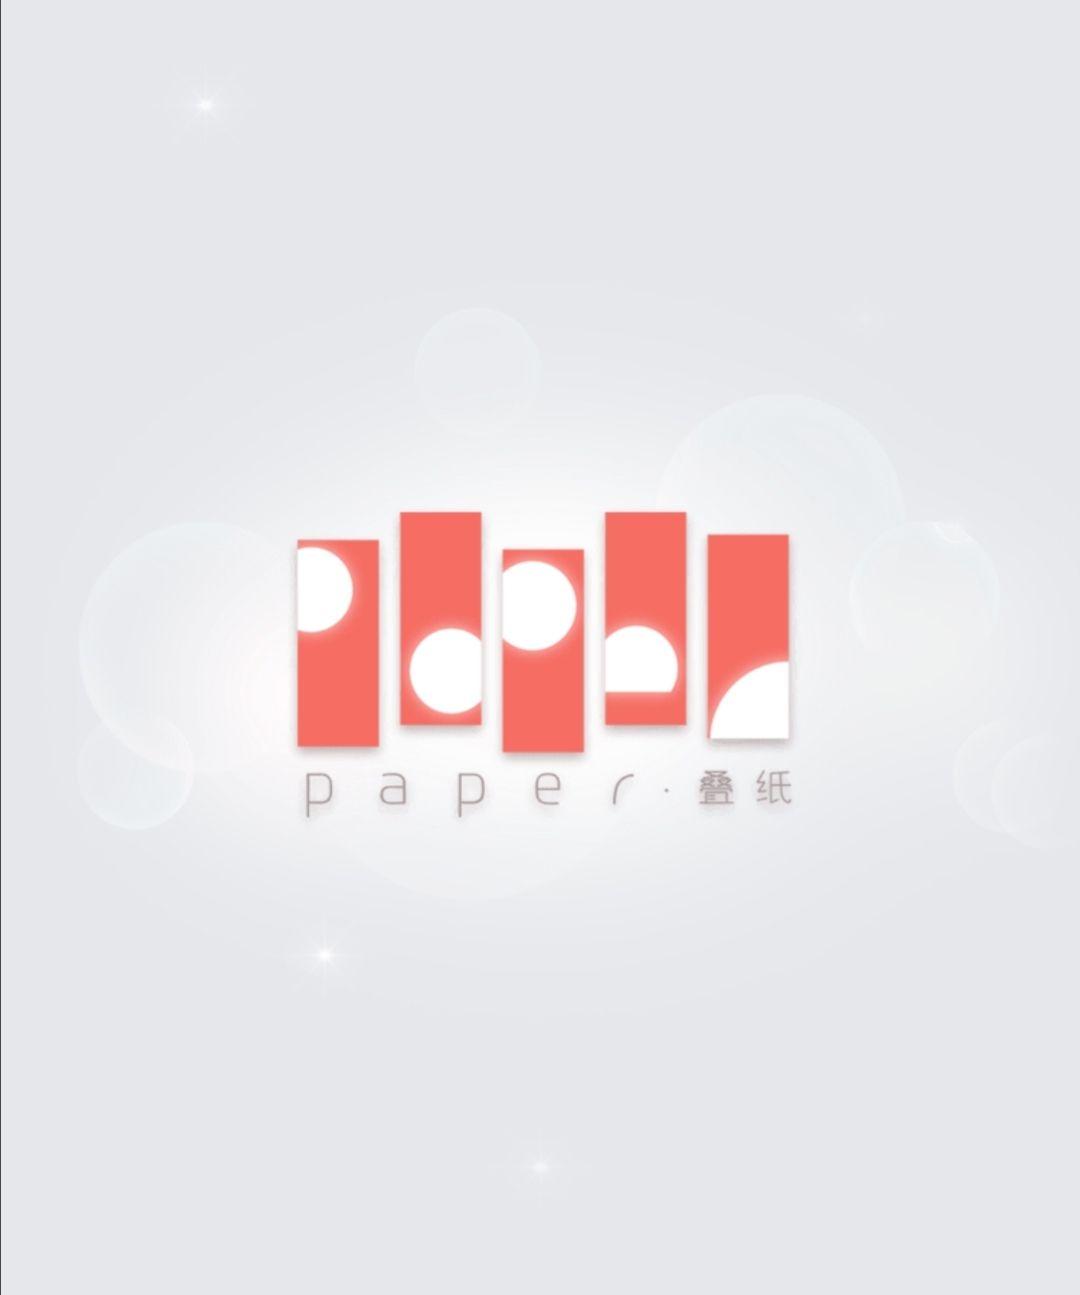 芜湖叠纸网络科技有限公司,说你呢!